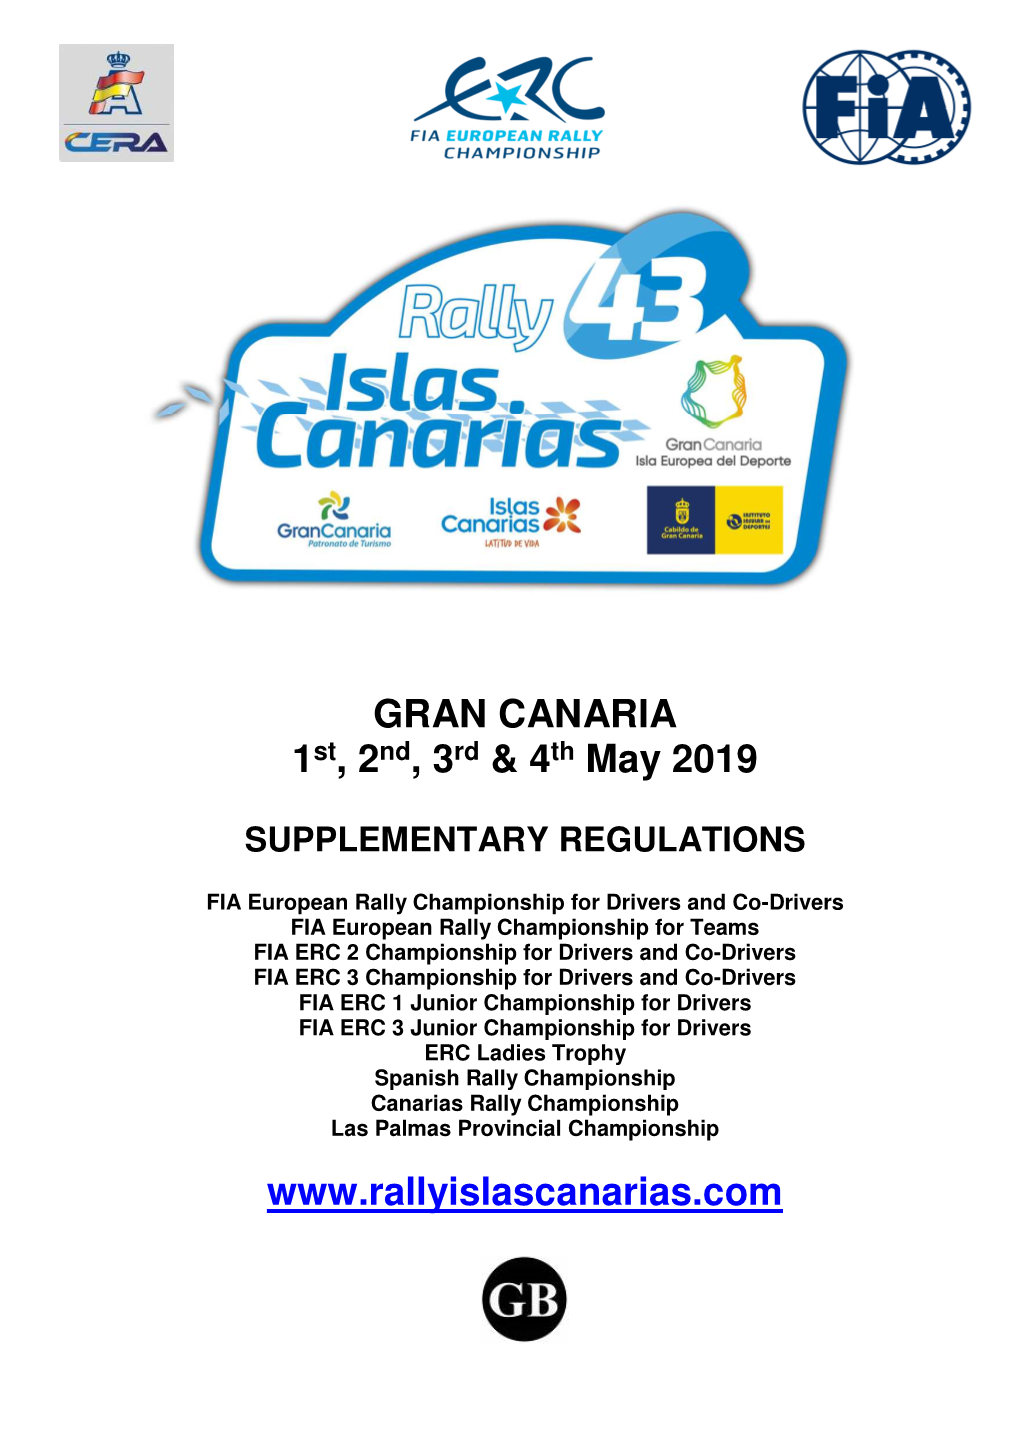 Rally Islas Canarias 2019 Supplementary Regulations